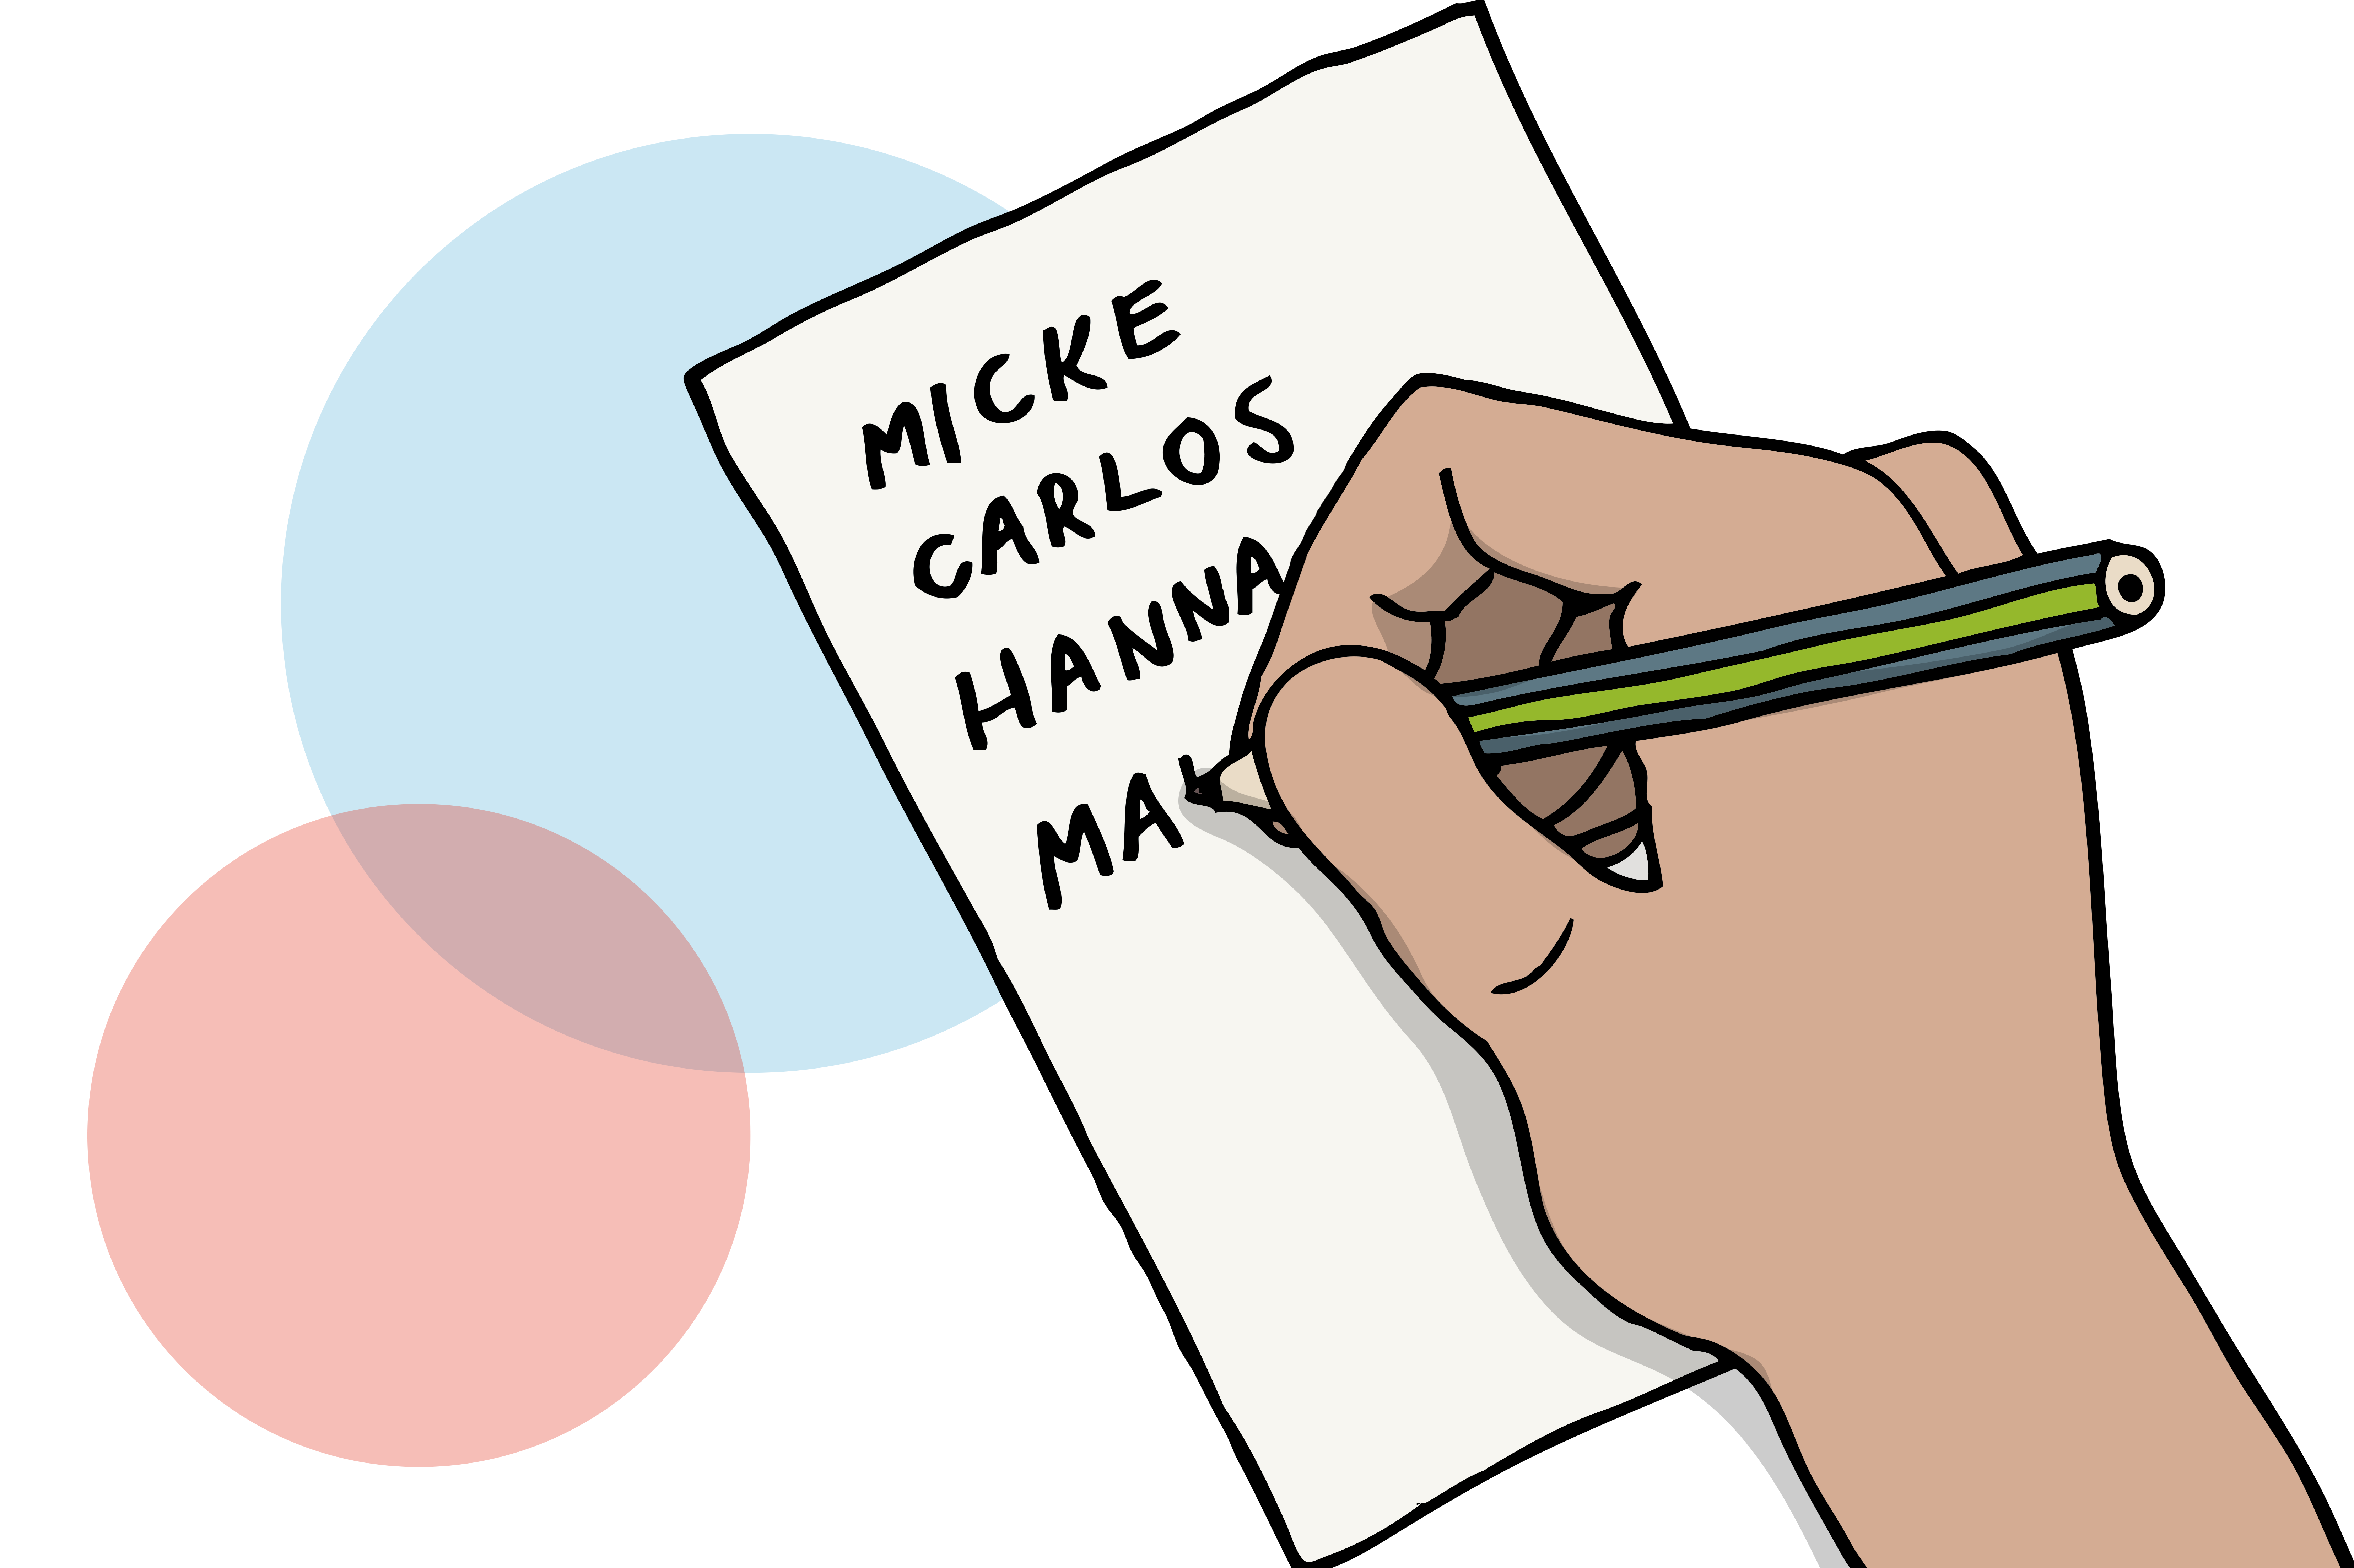 En hand skriver med en penna på ett papper "Micke, Carlos, Hannes ...". Illustration.